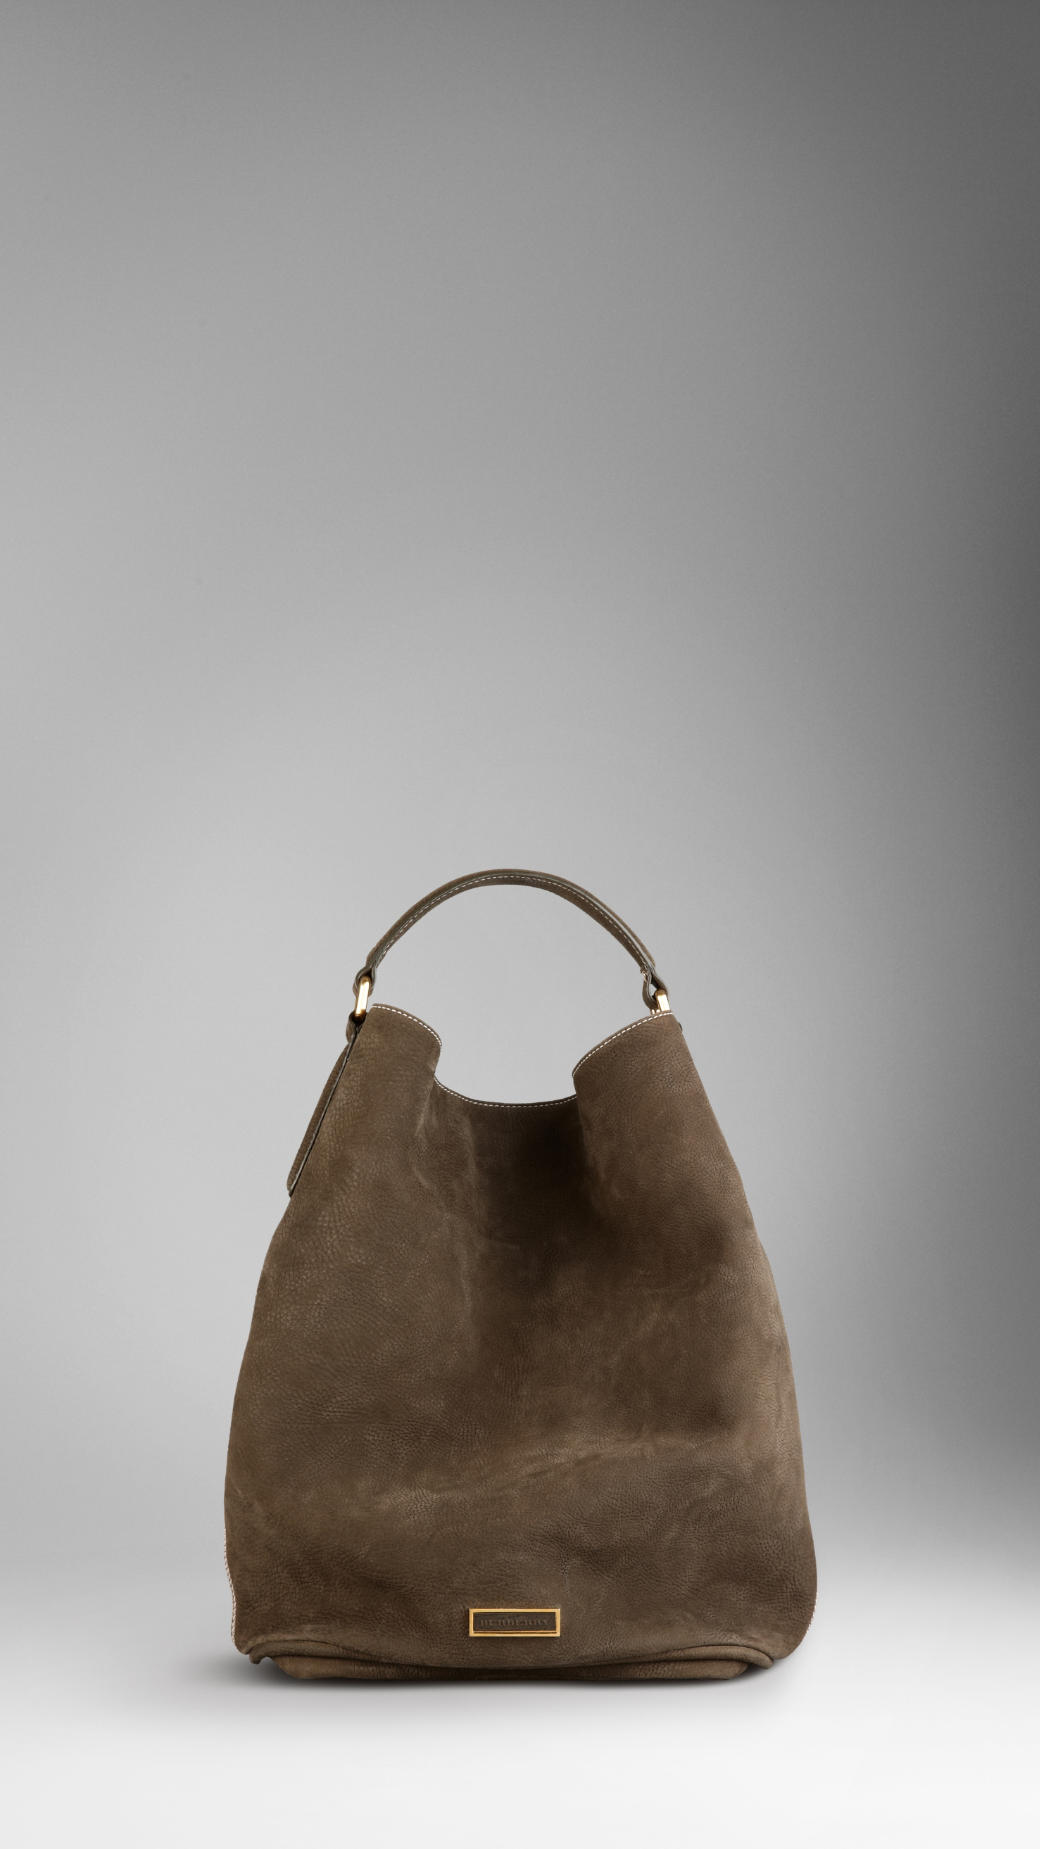 burberry hobo bag leather